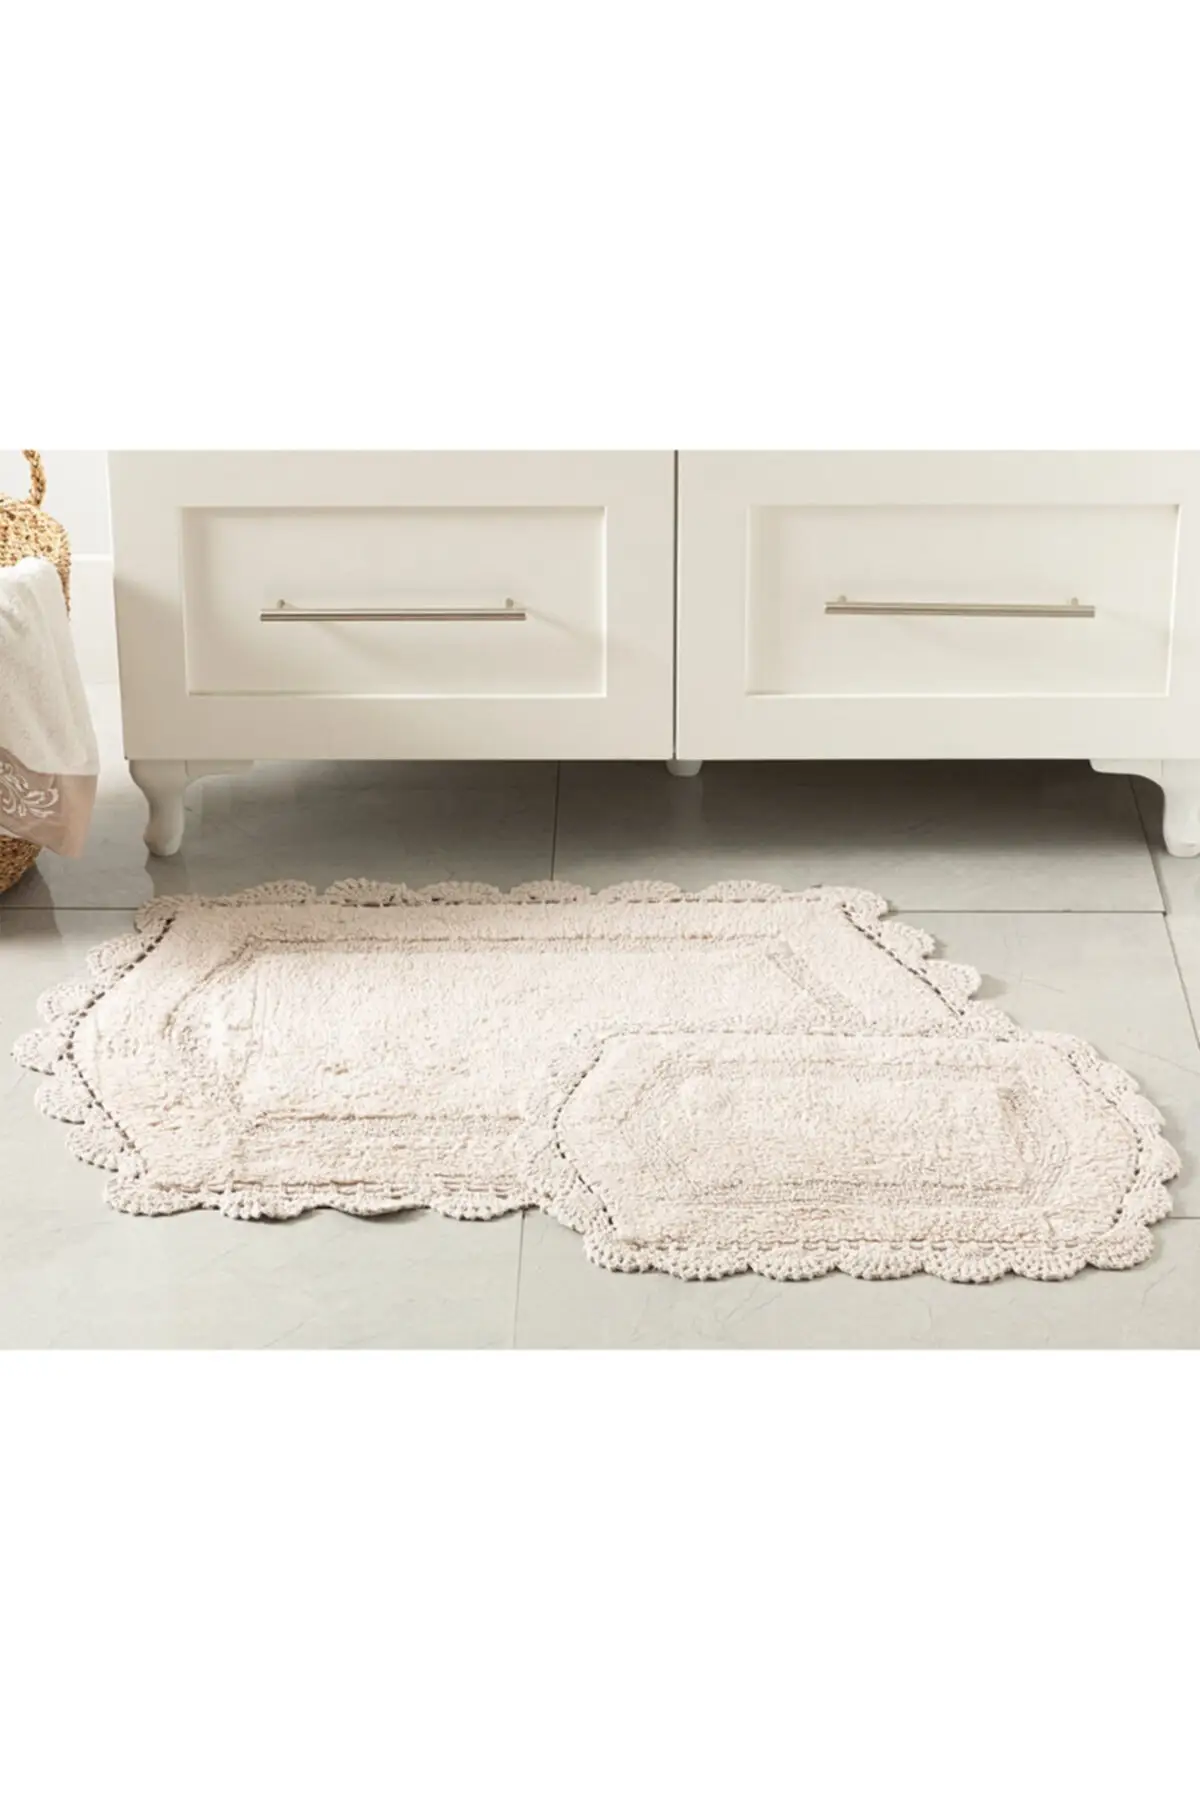 Mia cotton non slip sole bath mat set 60x90-40x60 Cm beige single piece non-slip textile home & furniture